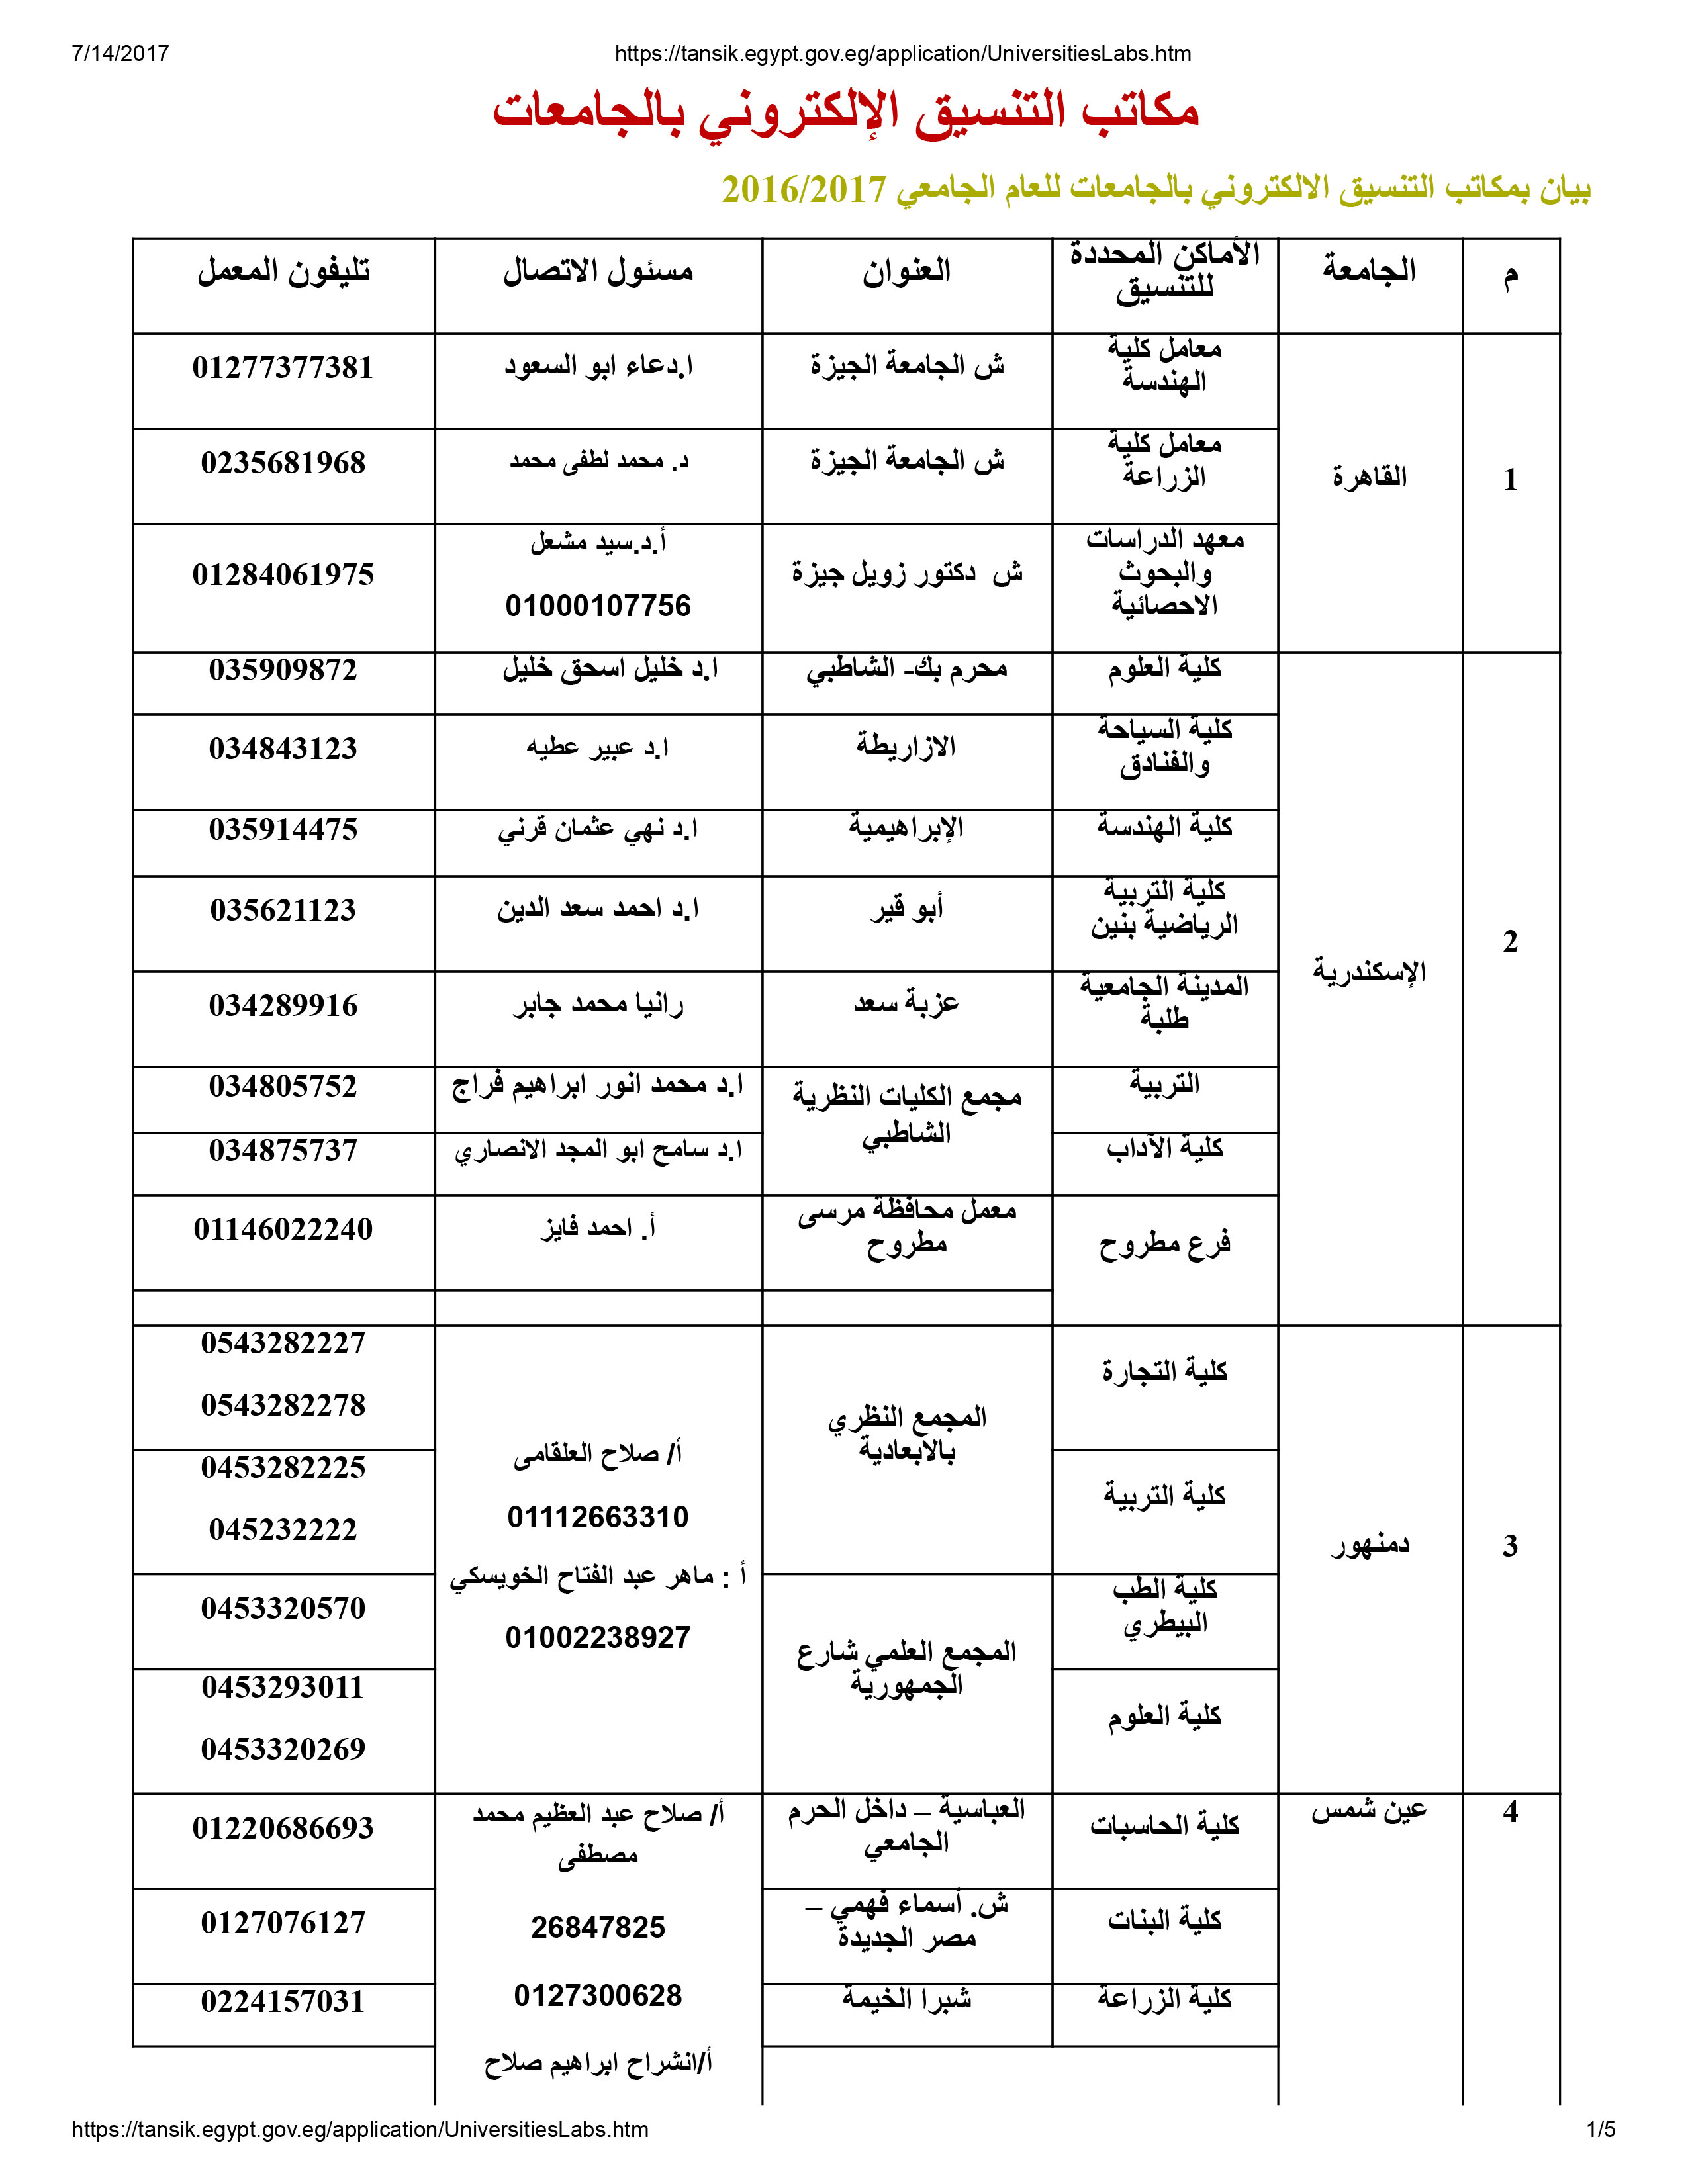 مسئولى مكاتب التنسيق بالجامعات المصرية (1)